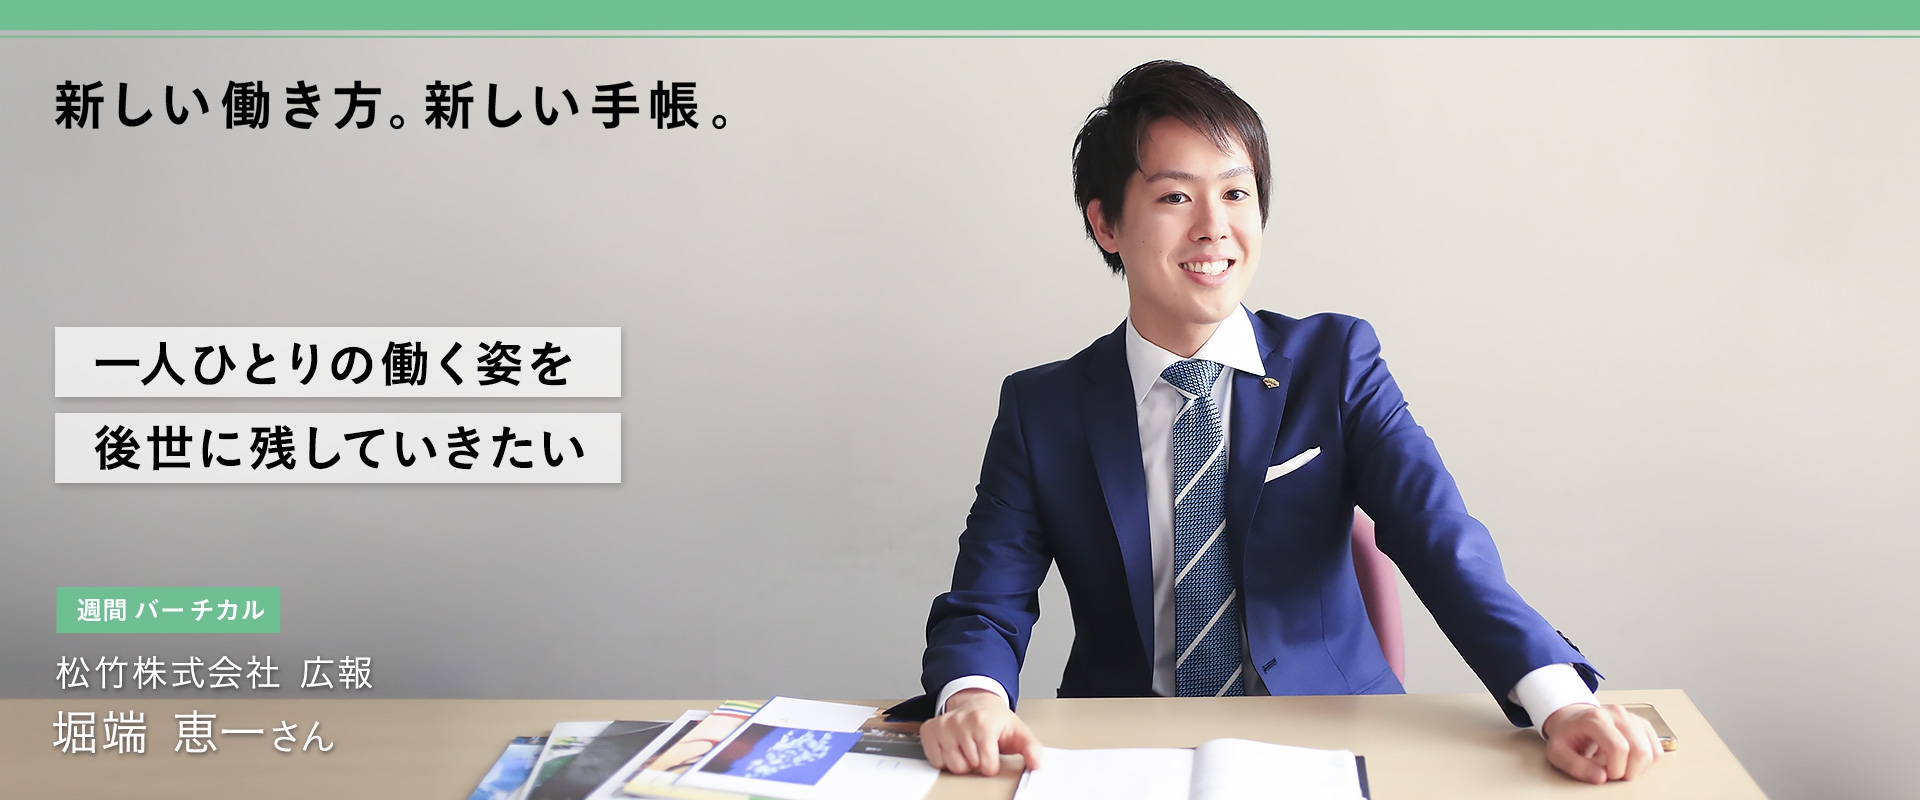 映像・演劇事業を主体とする松竹株式会社で広報として活躍する堀端恵一さんの、お仕事と手帳の使い方についてお伺いしたインタビューです。